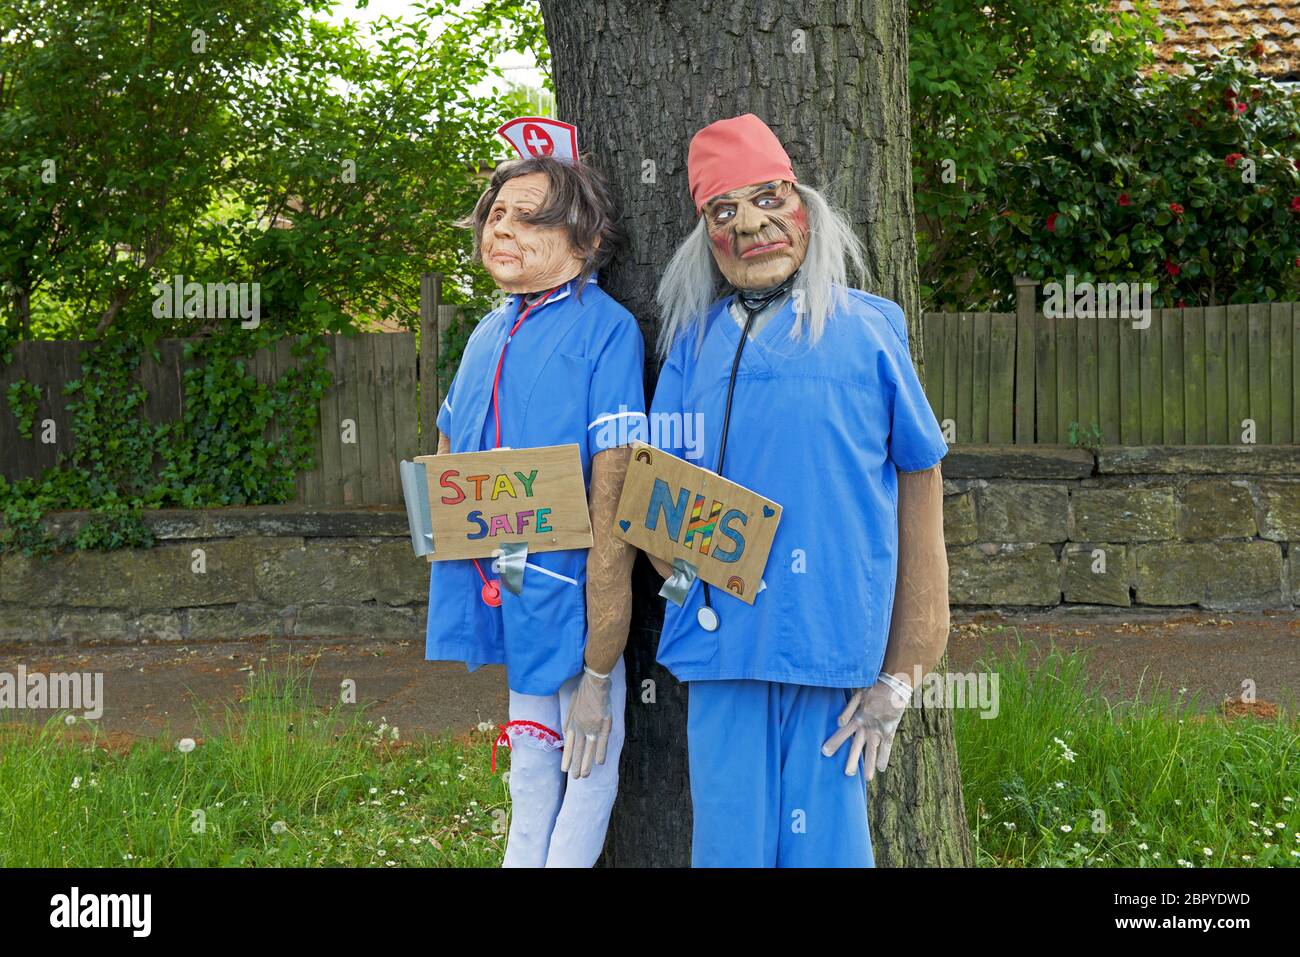 Ghoulish celebration of NHS key workers, England UK Stock Photo